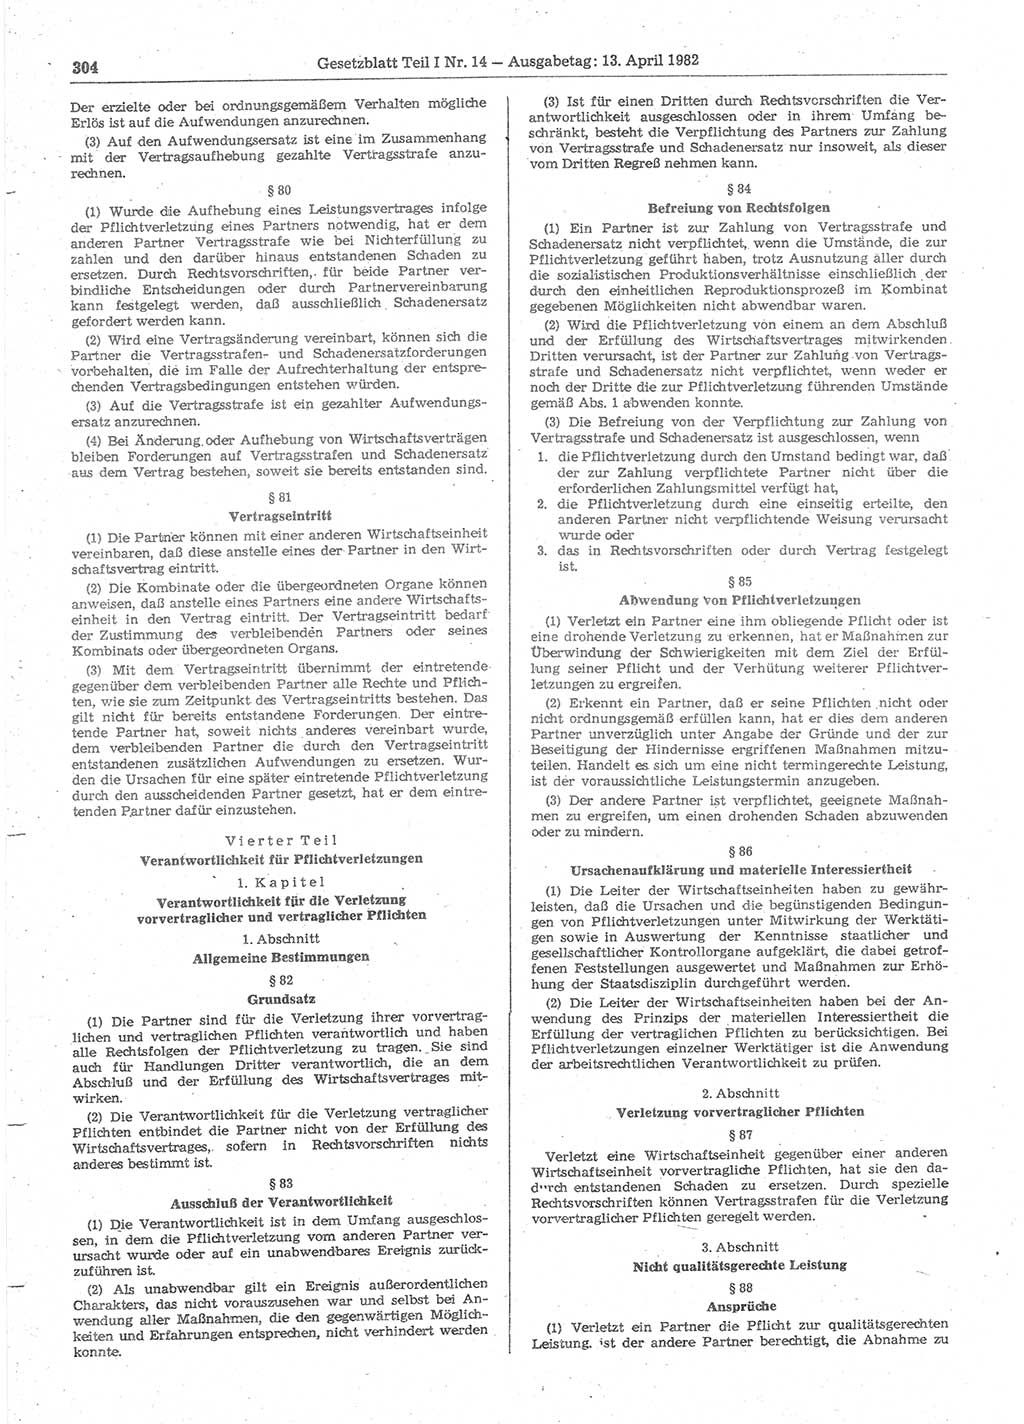 Gesetzblatt (GBl.) der Deutschen Demokratischen Republik (DDR) Teil Ⅰ 1982, Seite 304 (GBl. DDR Ⅰ 1982, S. 304)